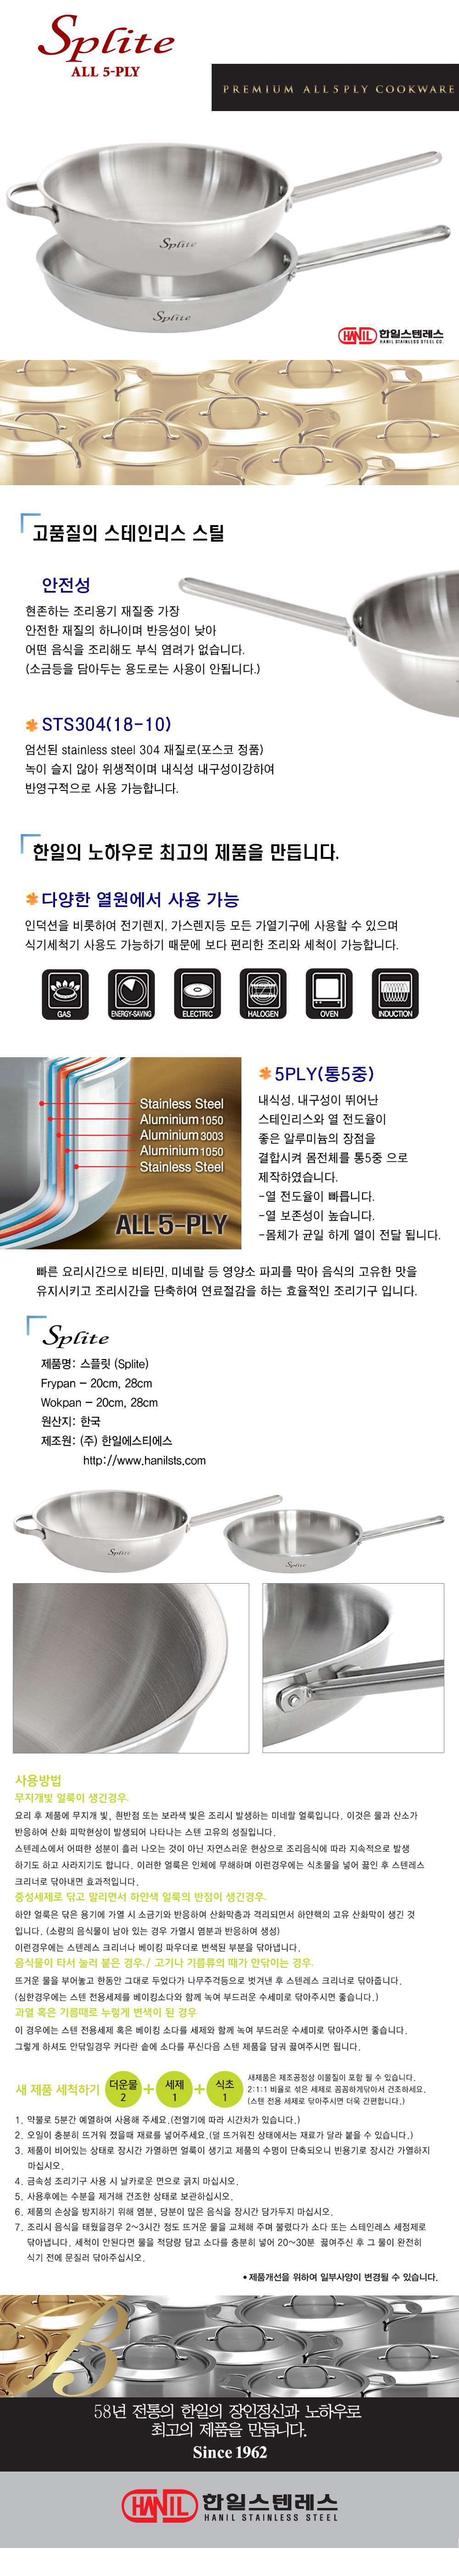 splite_wok%2526fan_142130.jpg